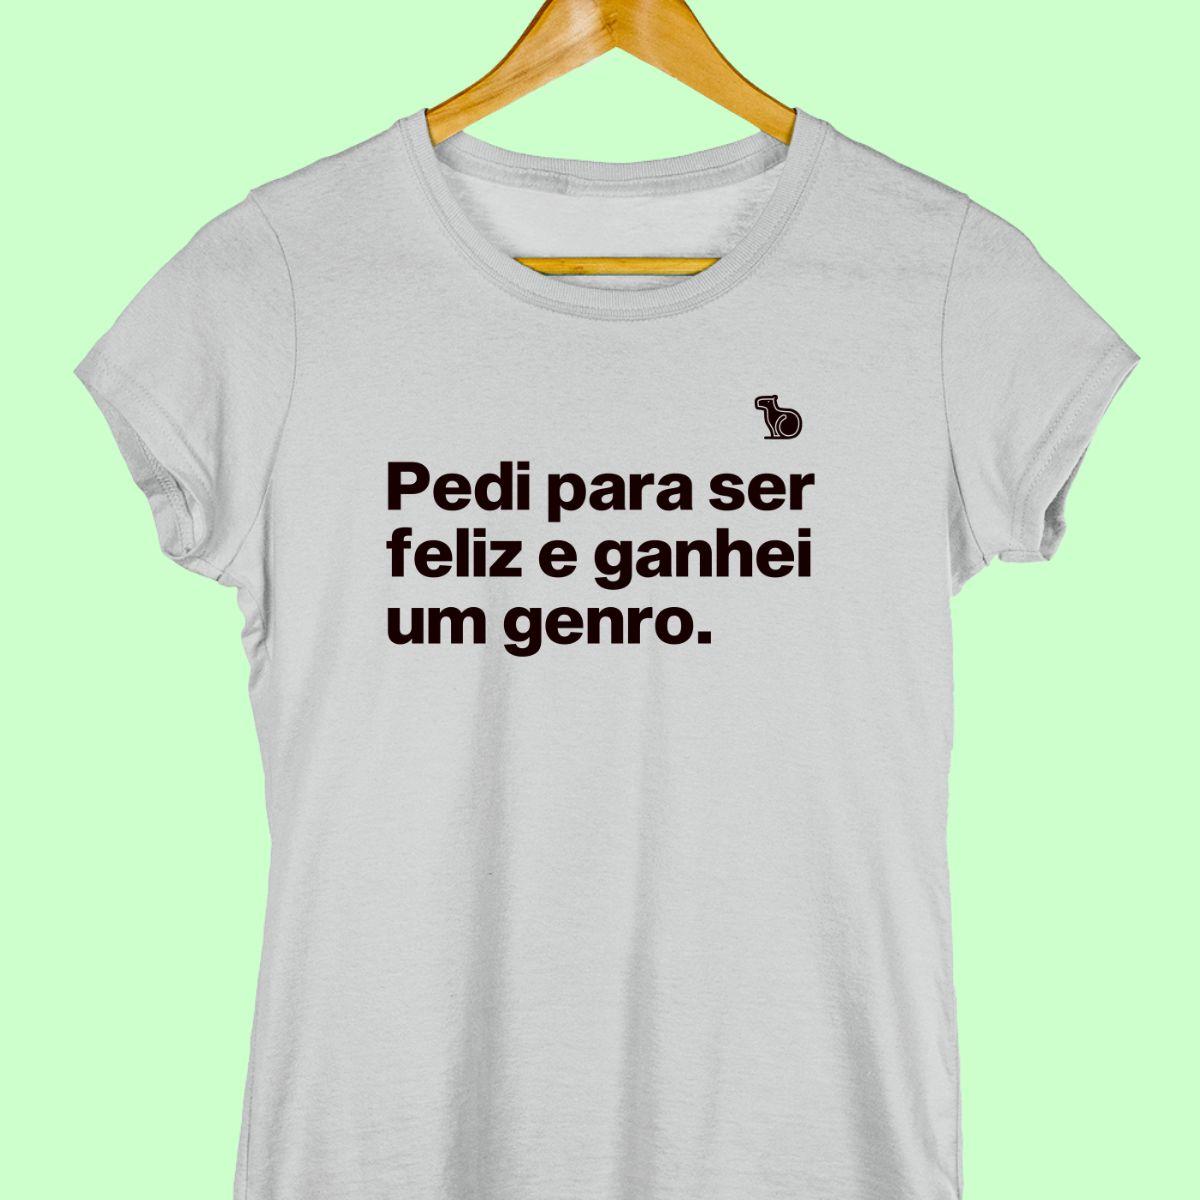 Camiseta com a frase "pedi para ser feliz e ganhei um genro." feminina cinza.